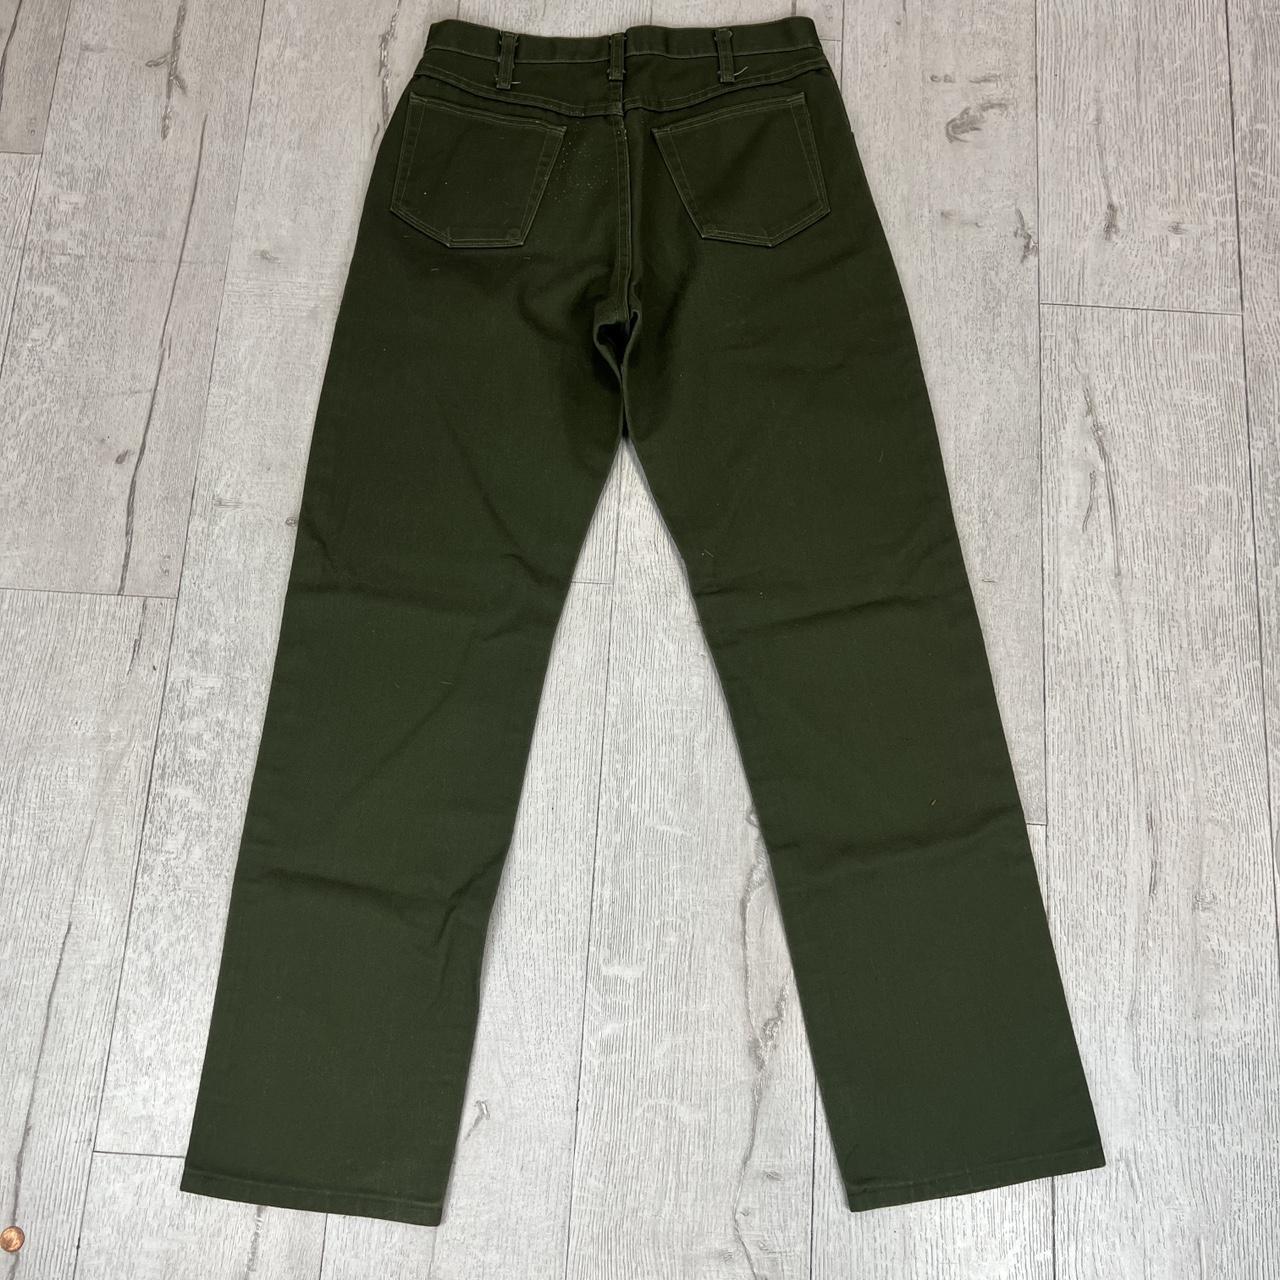 Olive green denim pants Size 32 In good preloved... - Depop